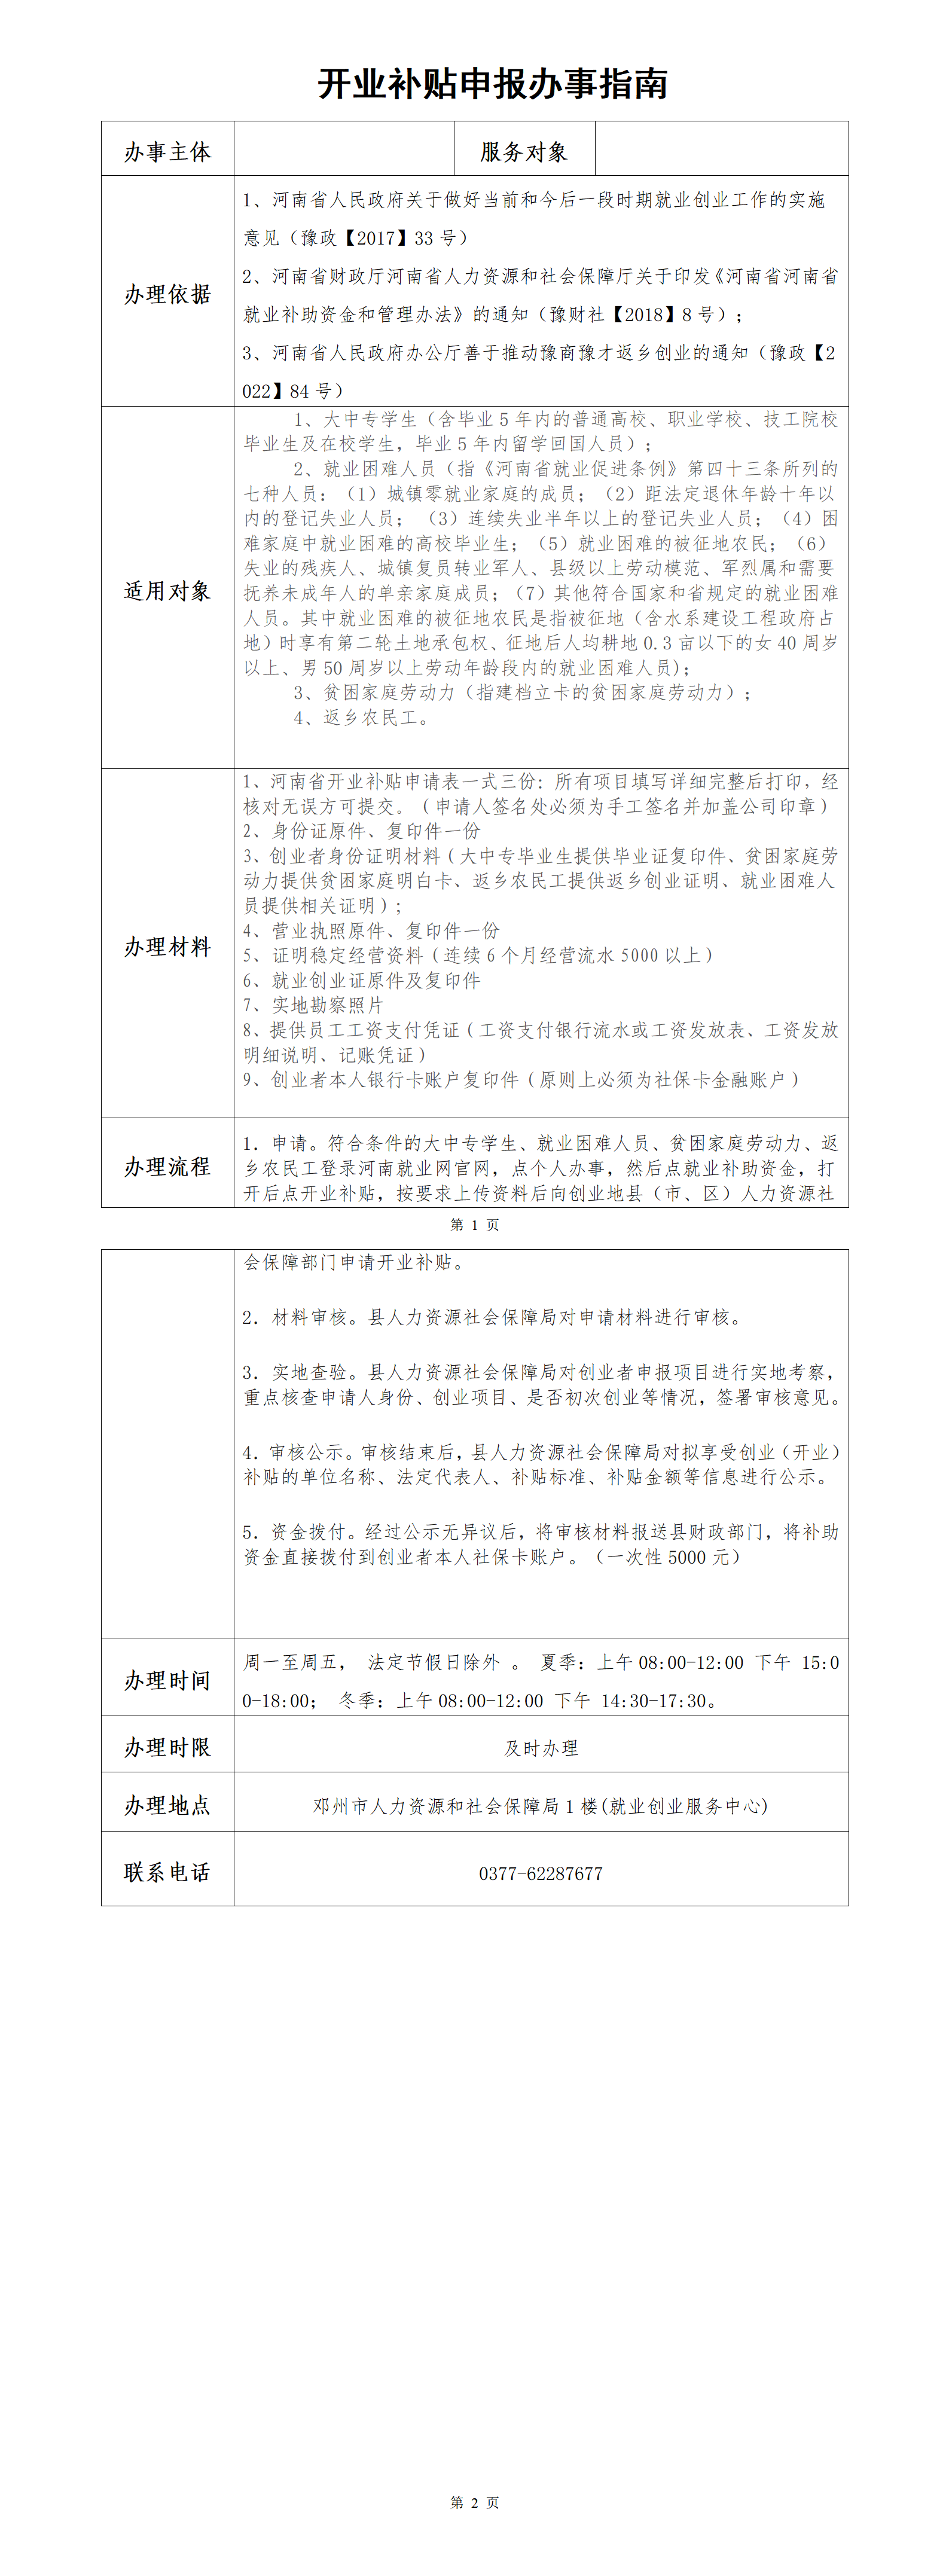 邓州市就业创业服务指南（开业补贴）(1)_01.png